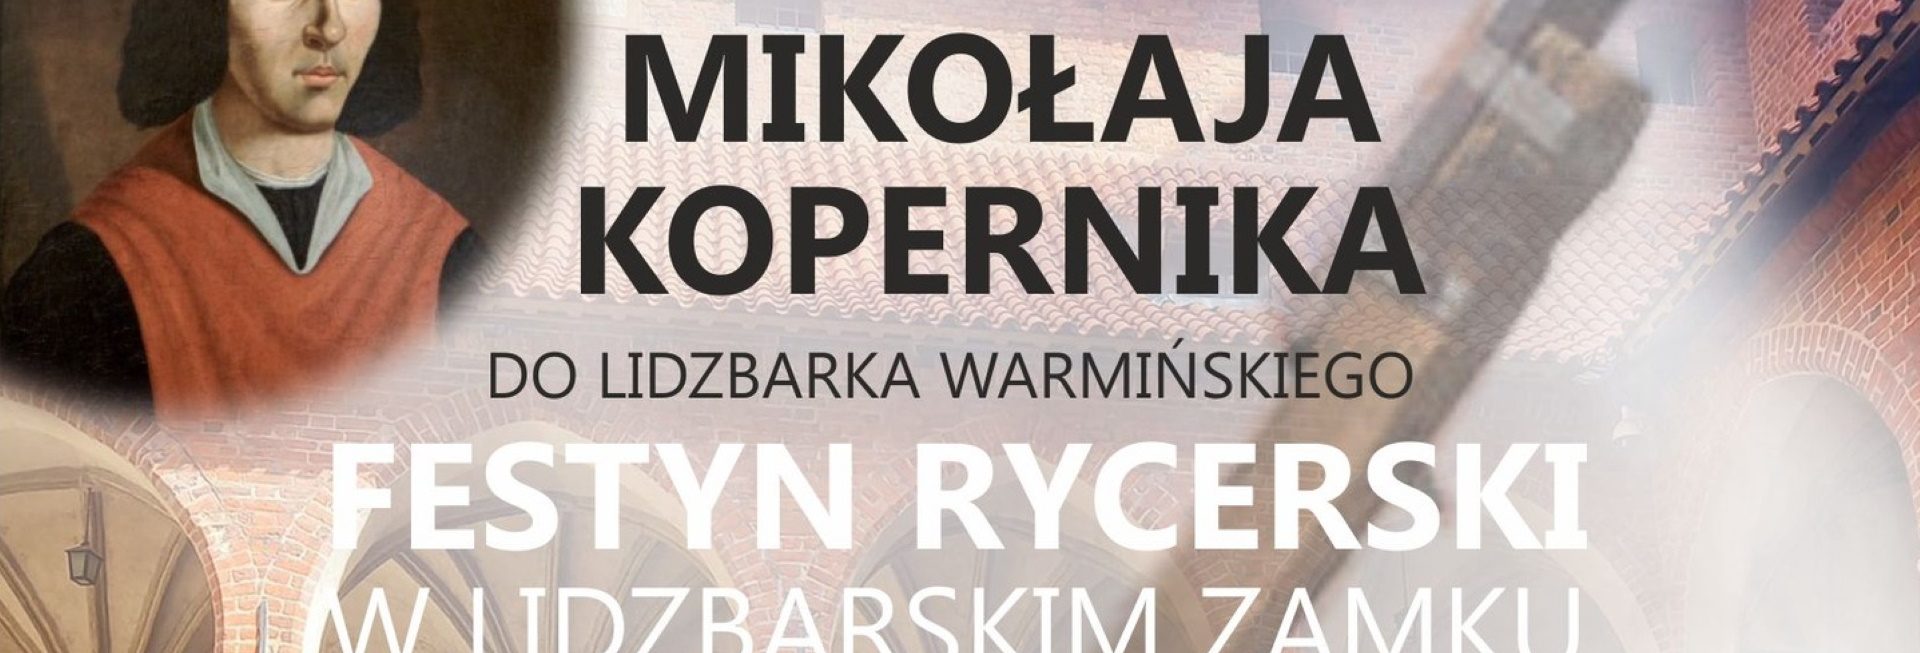 Plakat zapraszający w sobotę 3 czerwca 2023 r. do Lidzbarka Warmińskiego na Festyn Rycerski - Przyjazd Mikołaja Kopernika Lidzbark Warmiński 2023. 